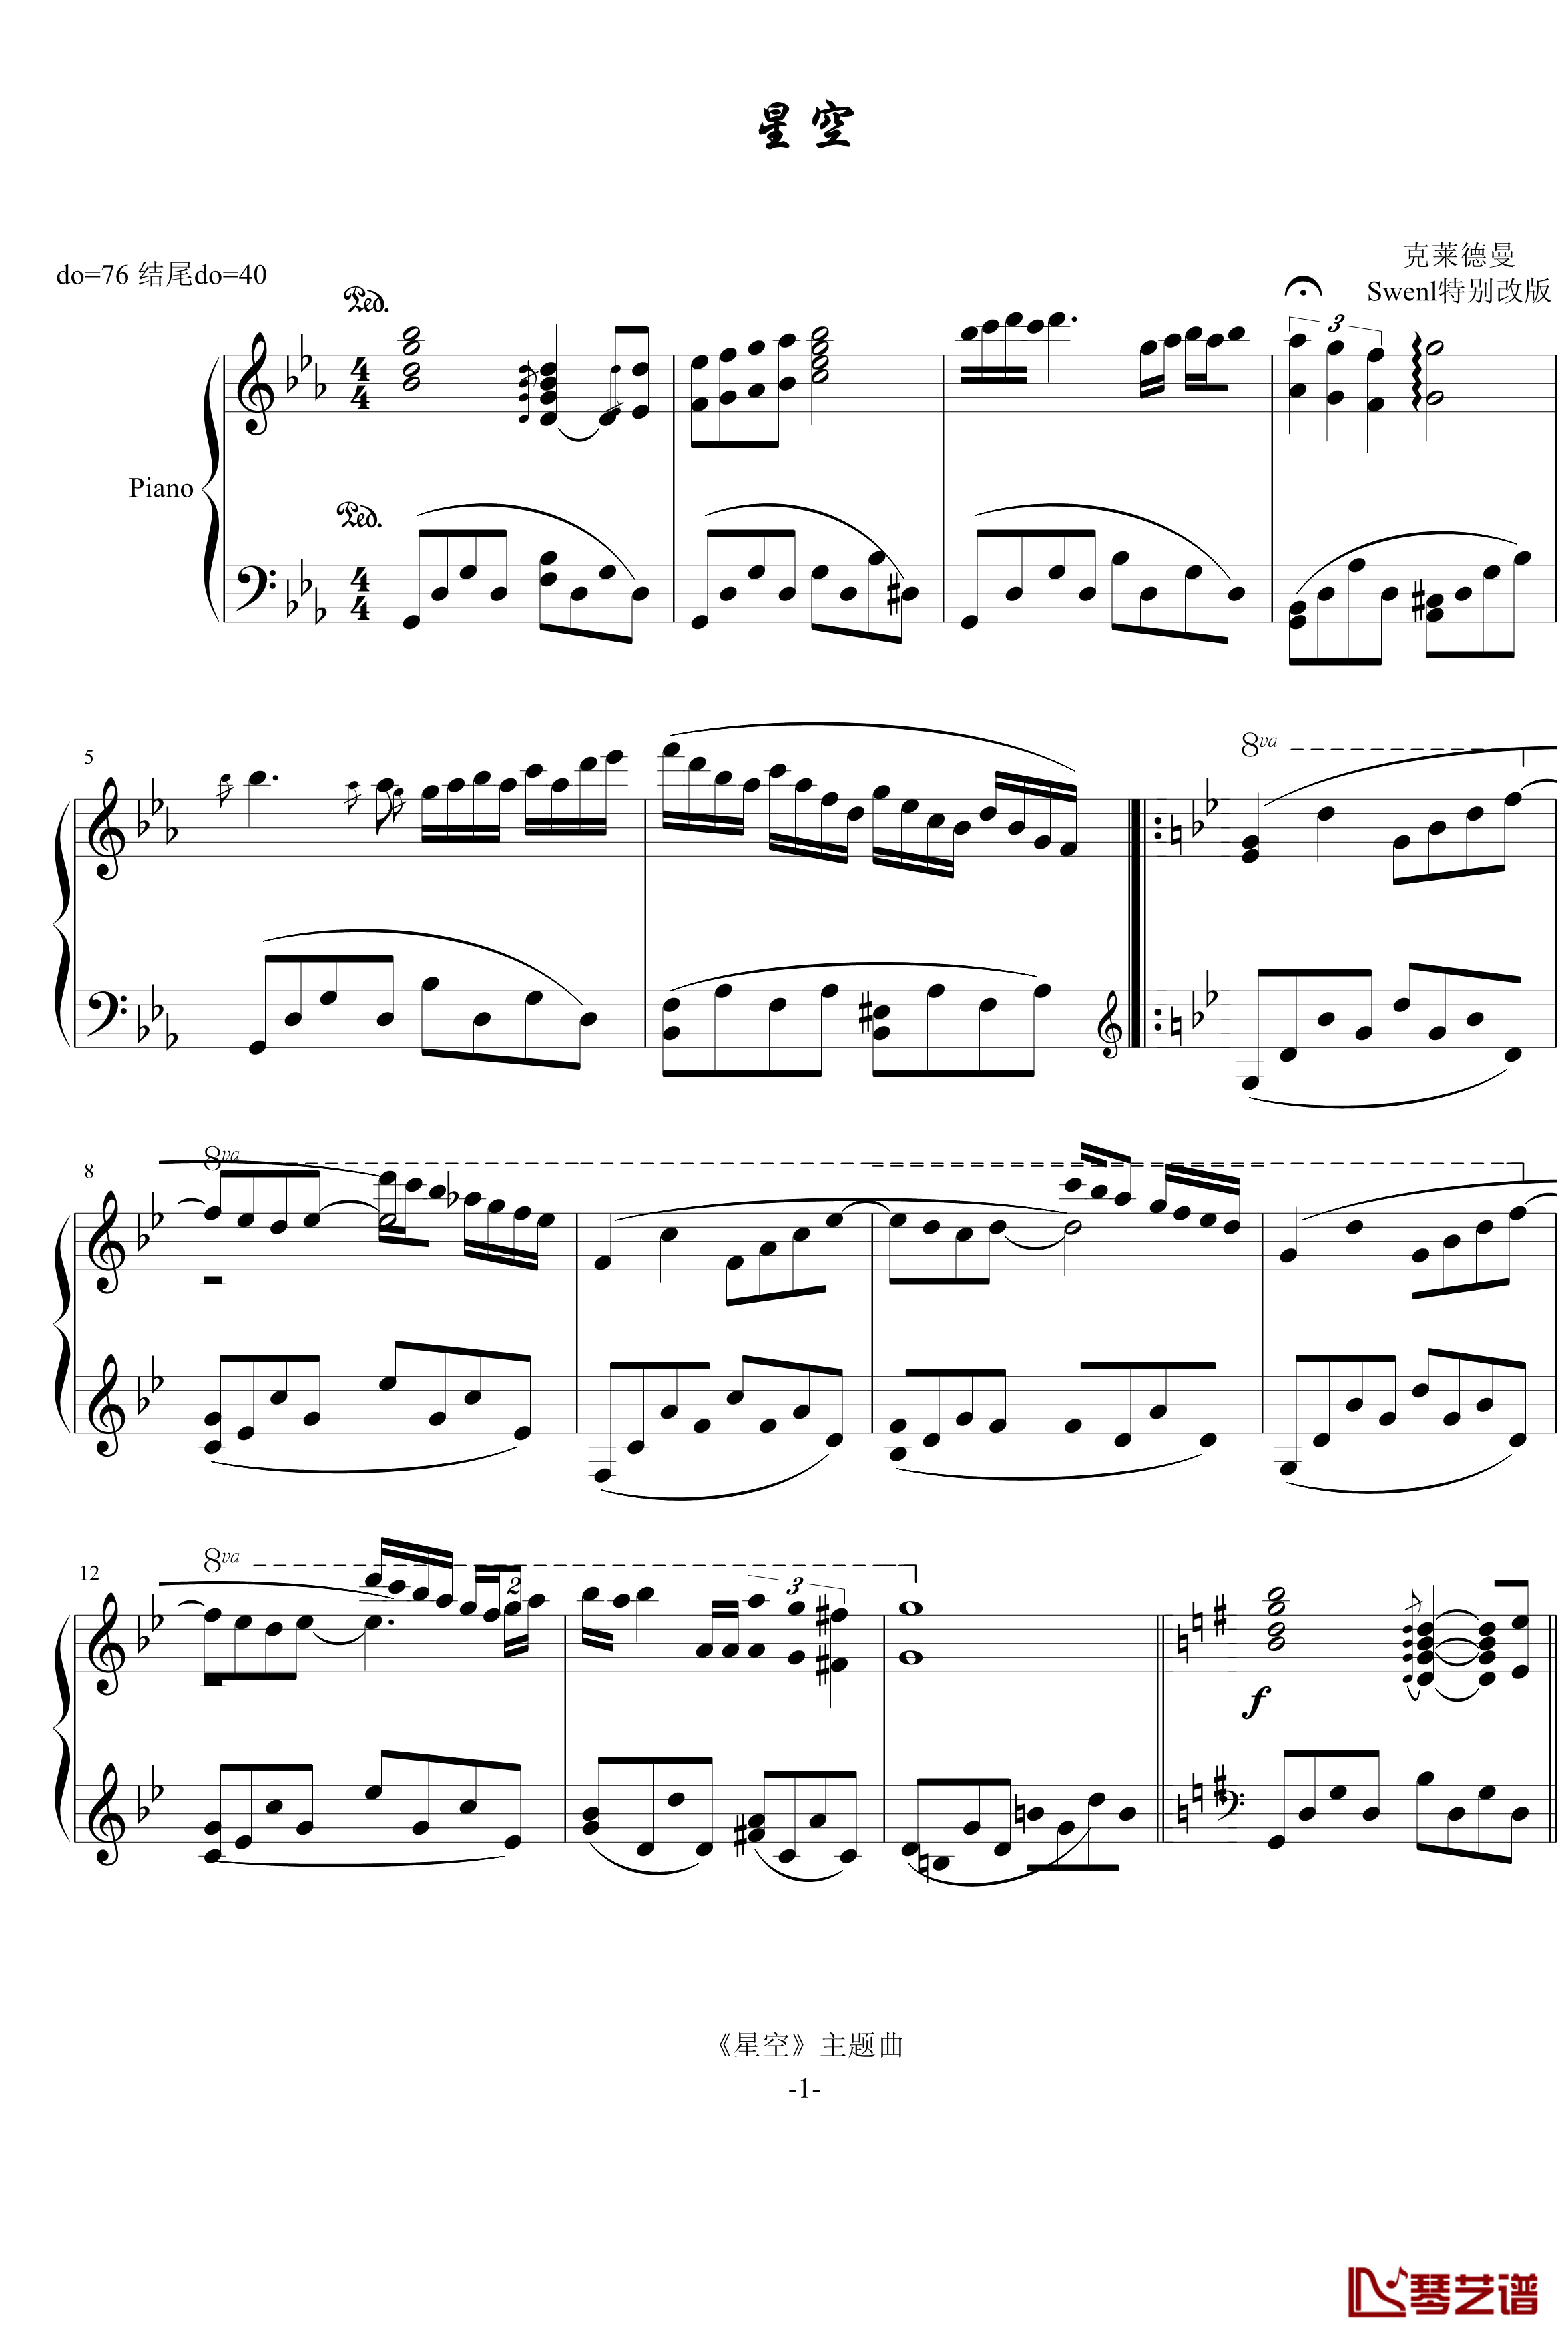 星空钢琴谱-Swenl特别版-克莱德曼1